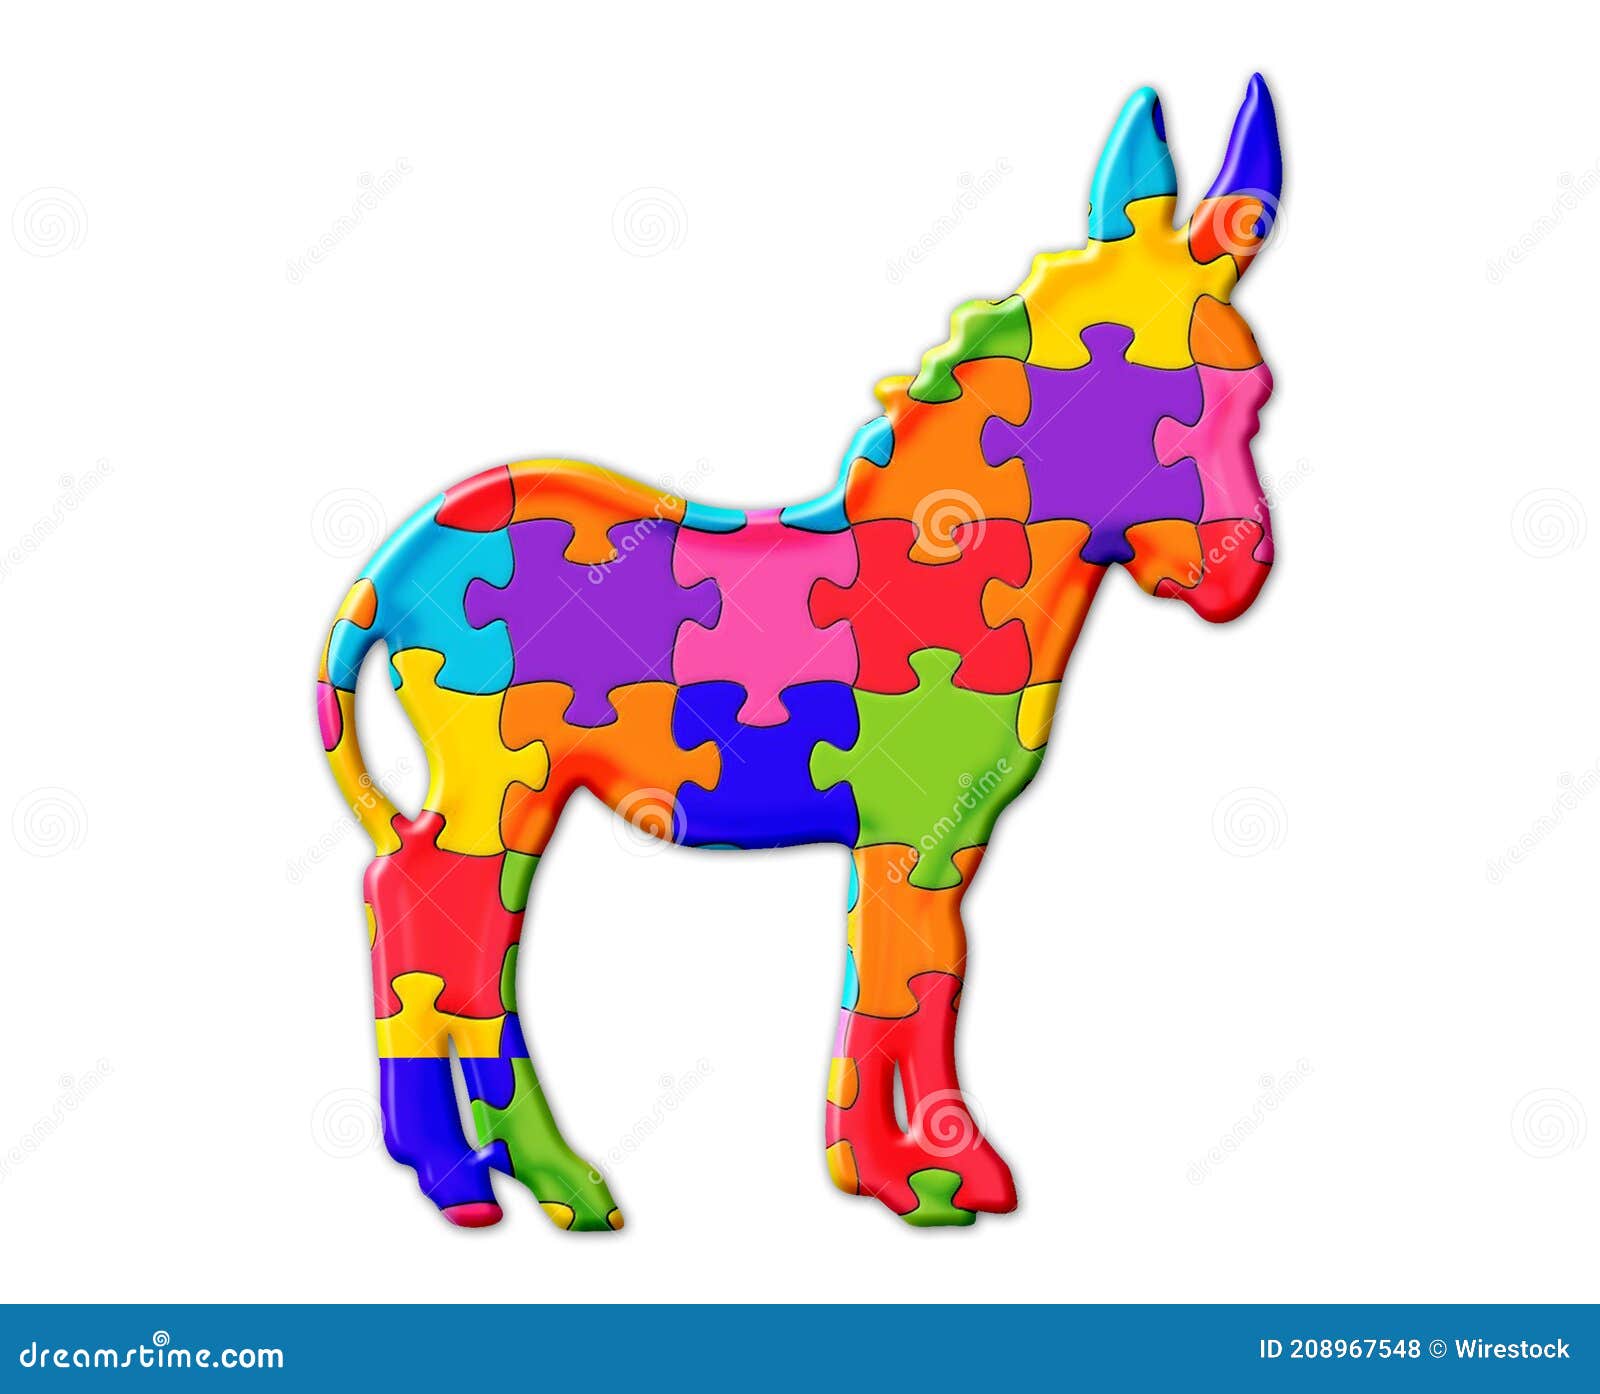 Ilustración De Un Burro De Puzzles Coloridos En Un Fondo Aislado Stock de  ilustración - Ilustración de color, fondo: 208967548